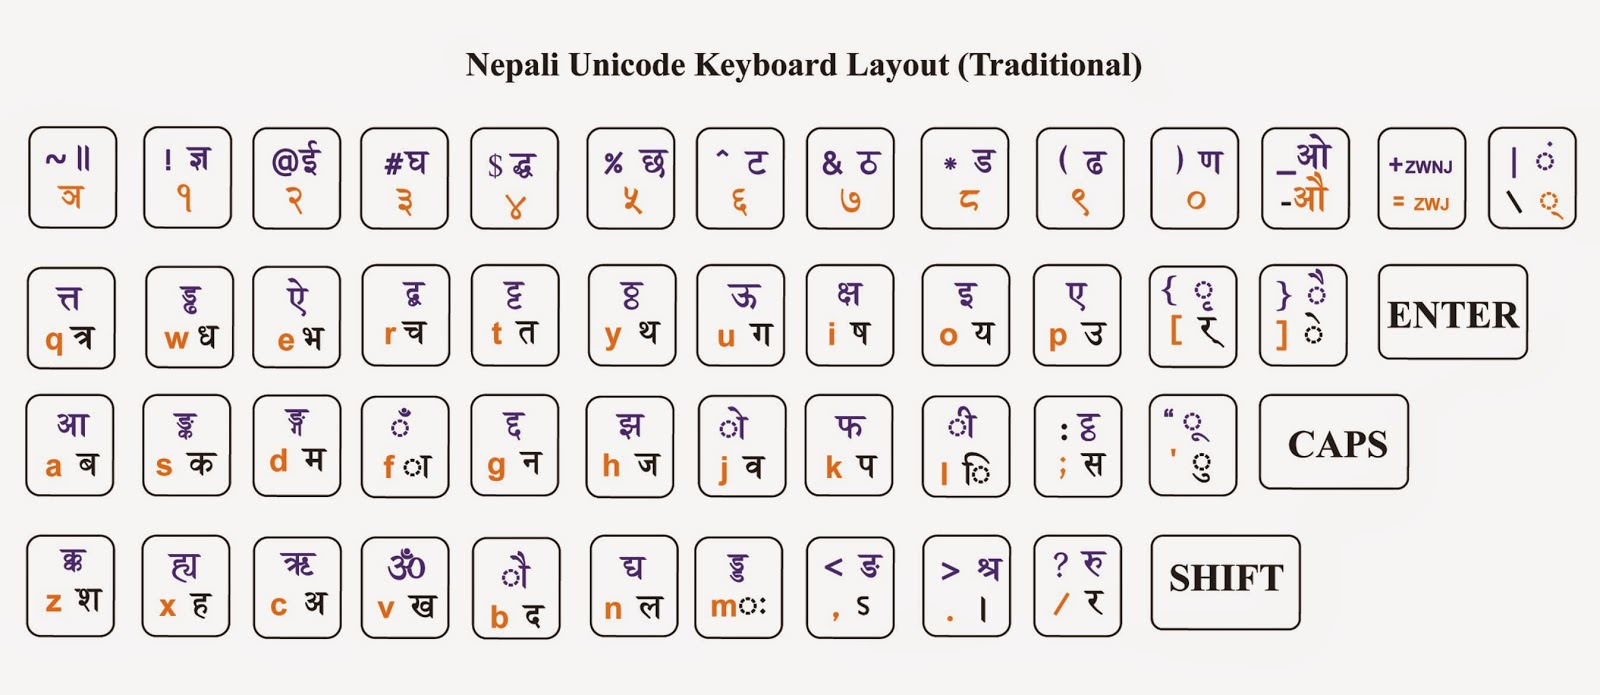 Nepali Unicode Keyboard Layout - Traditional